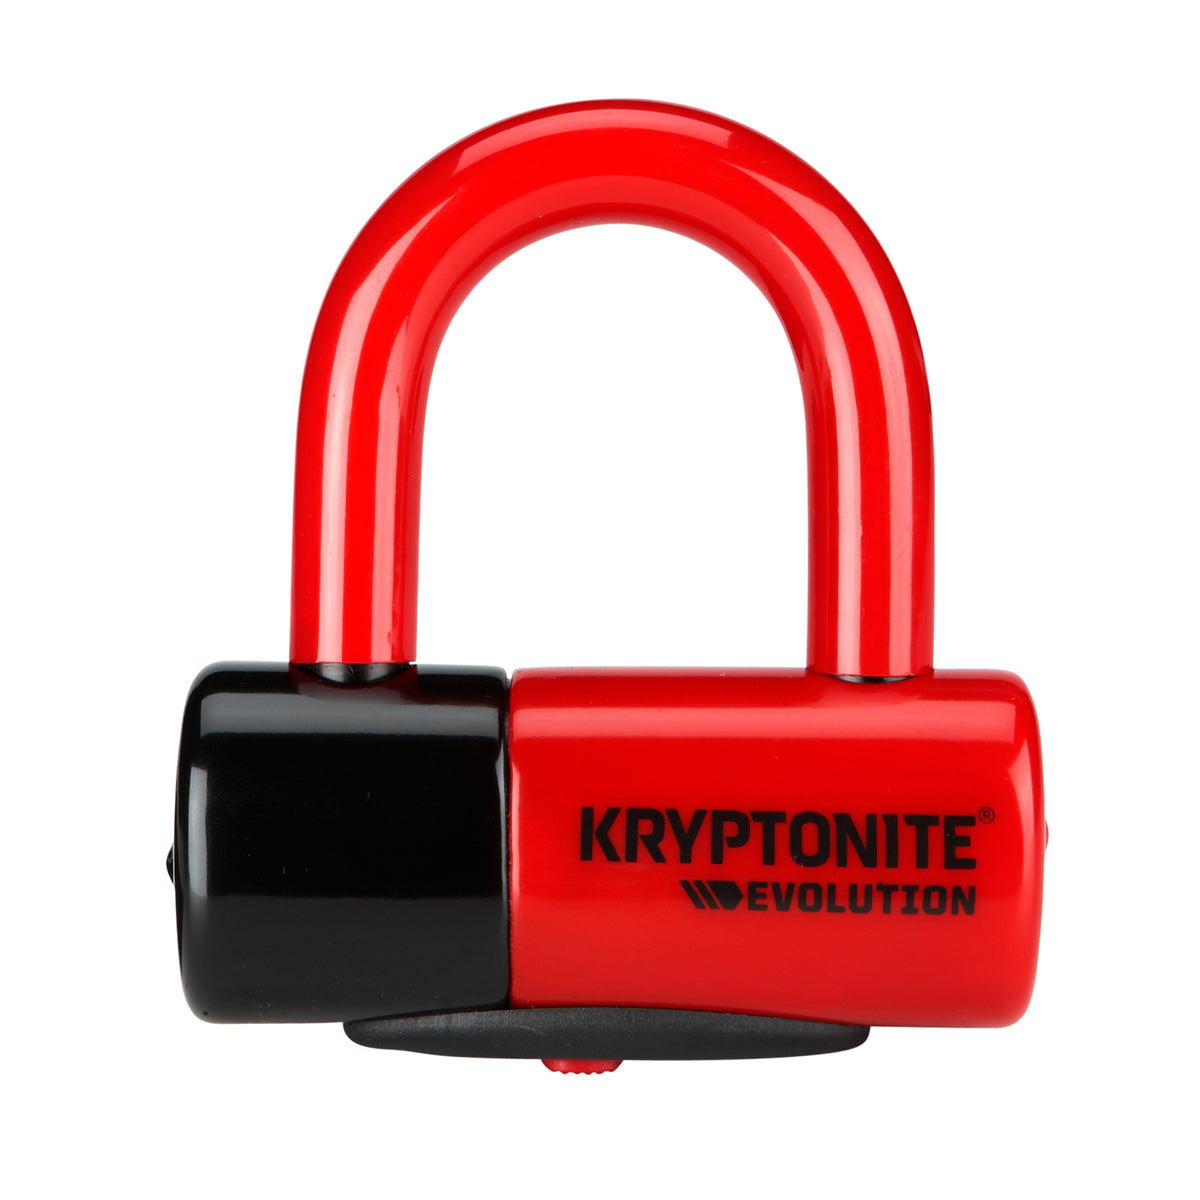 Kryptonite 999621 Evolution Series 4 Disc Locks Red LED Key Light